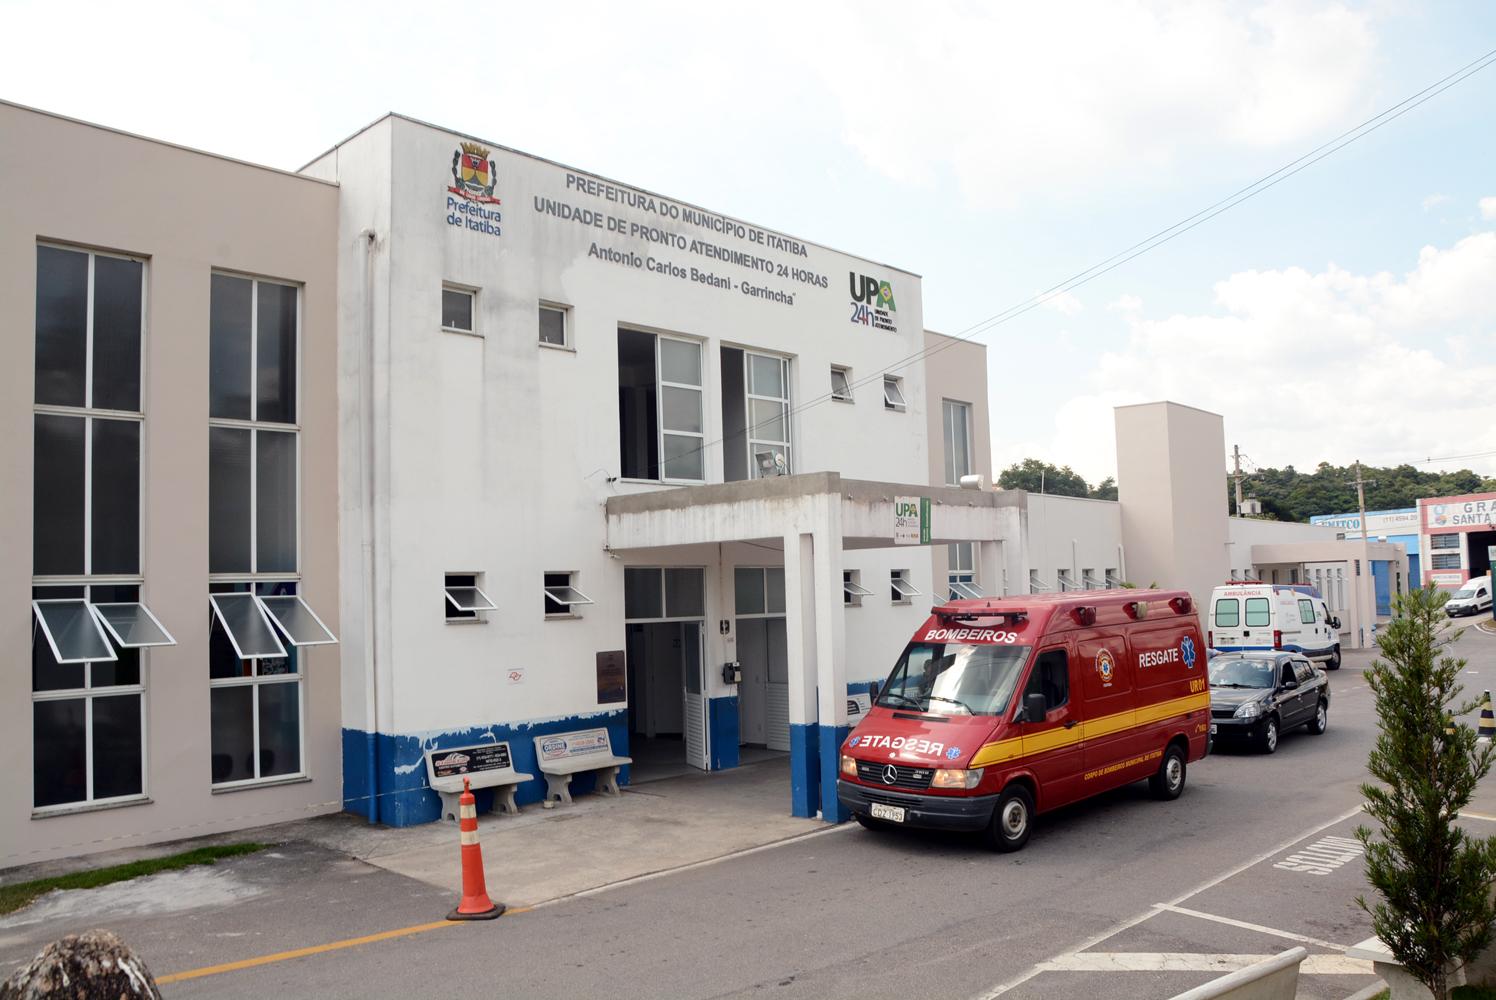 Saúde em Itatiba: atendimento restrito e profissionais afastados por covid-19 